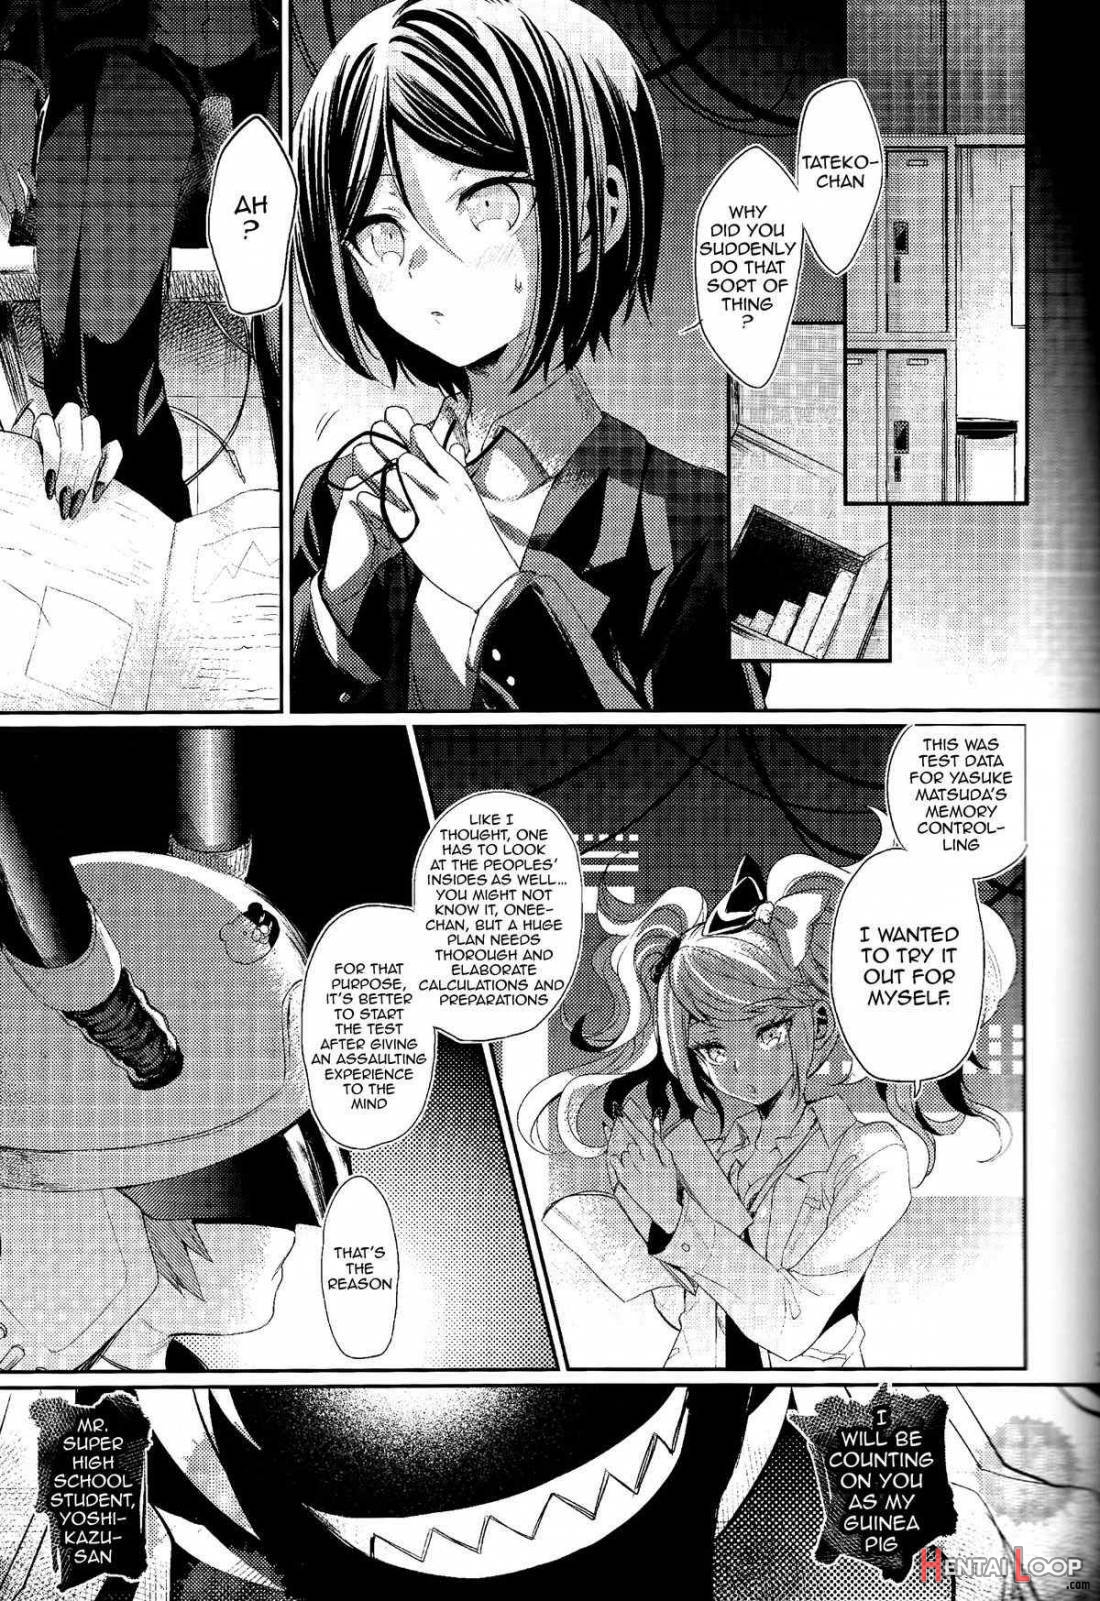 Zetsubou☆Locker Room ~Zetsubou☆Rocker Room~ page 22